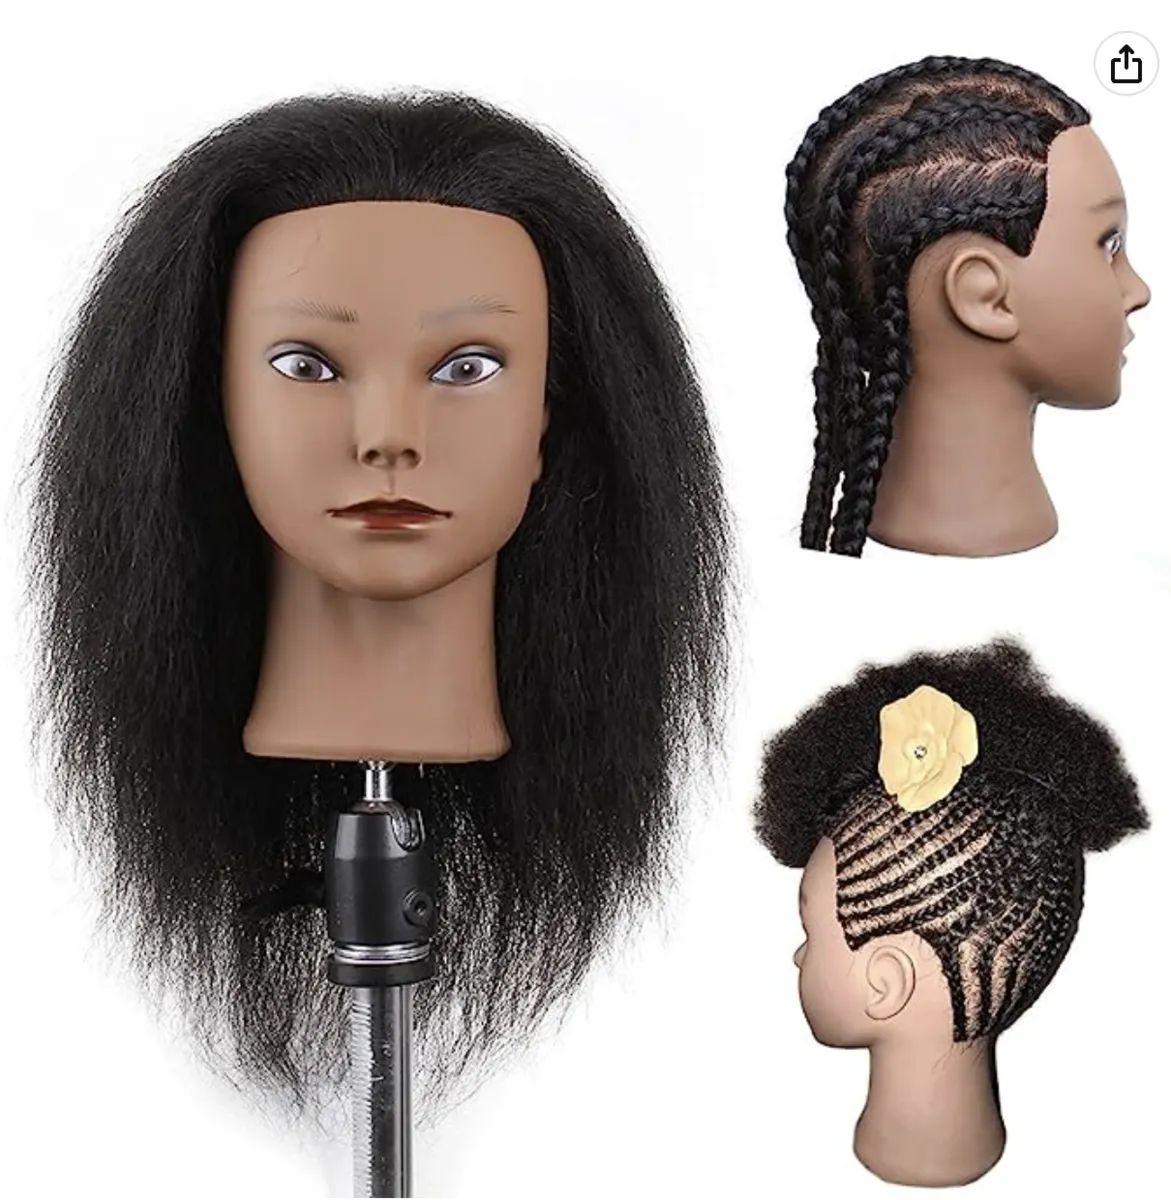 100% Human Hair Mannequin Head For Braiding Manikin Head For